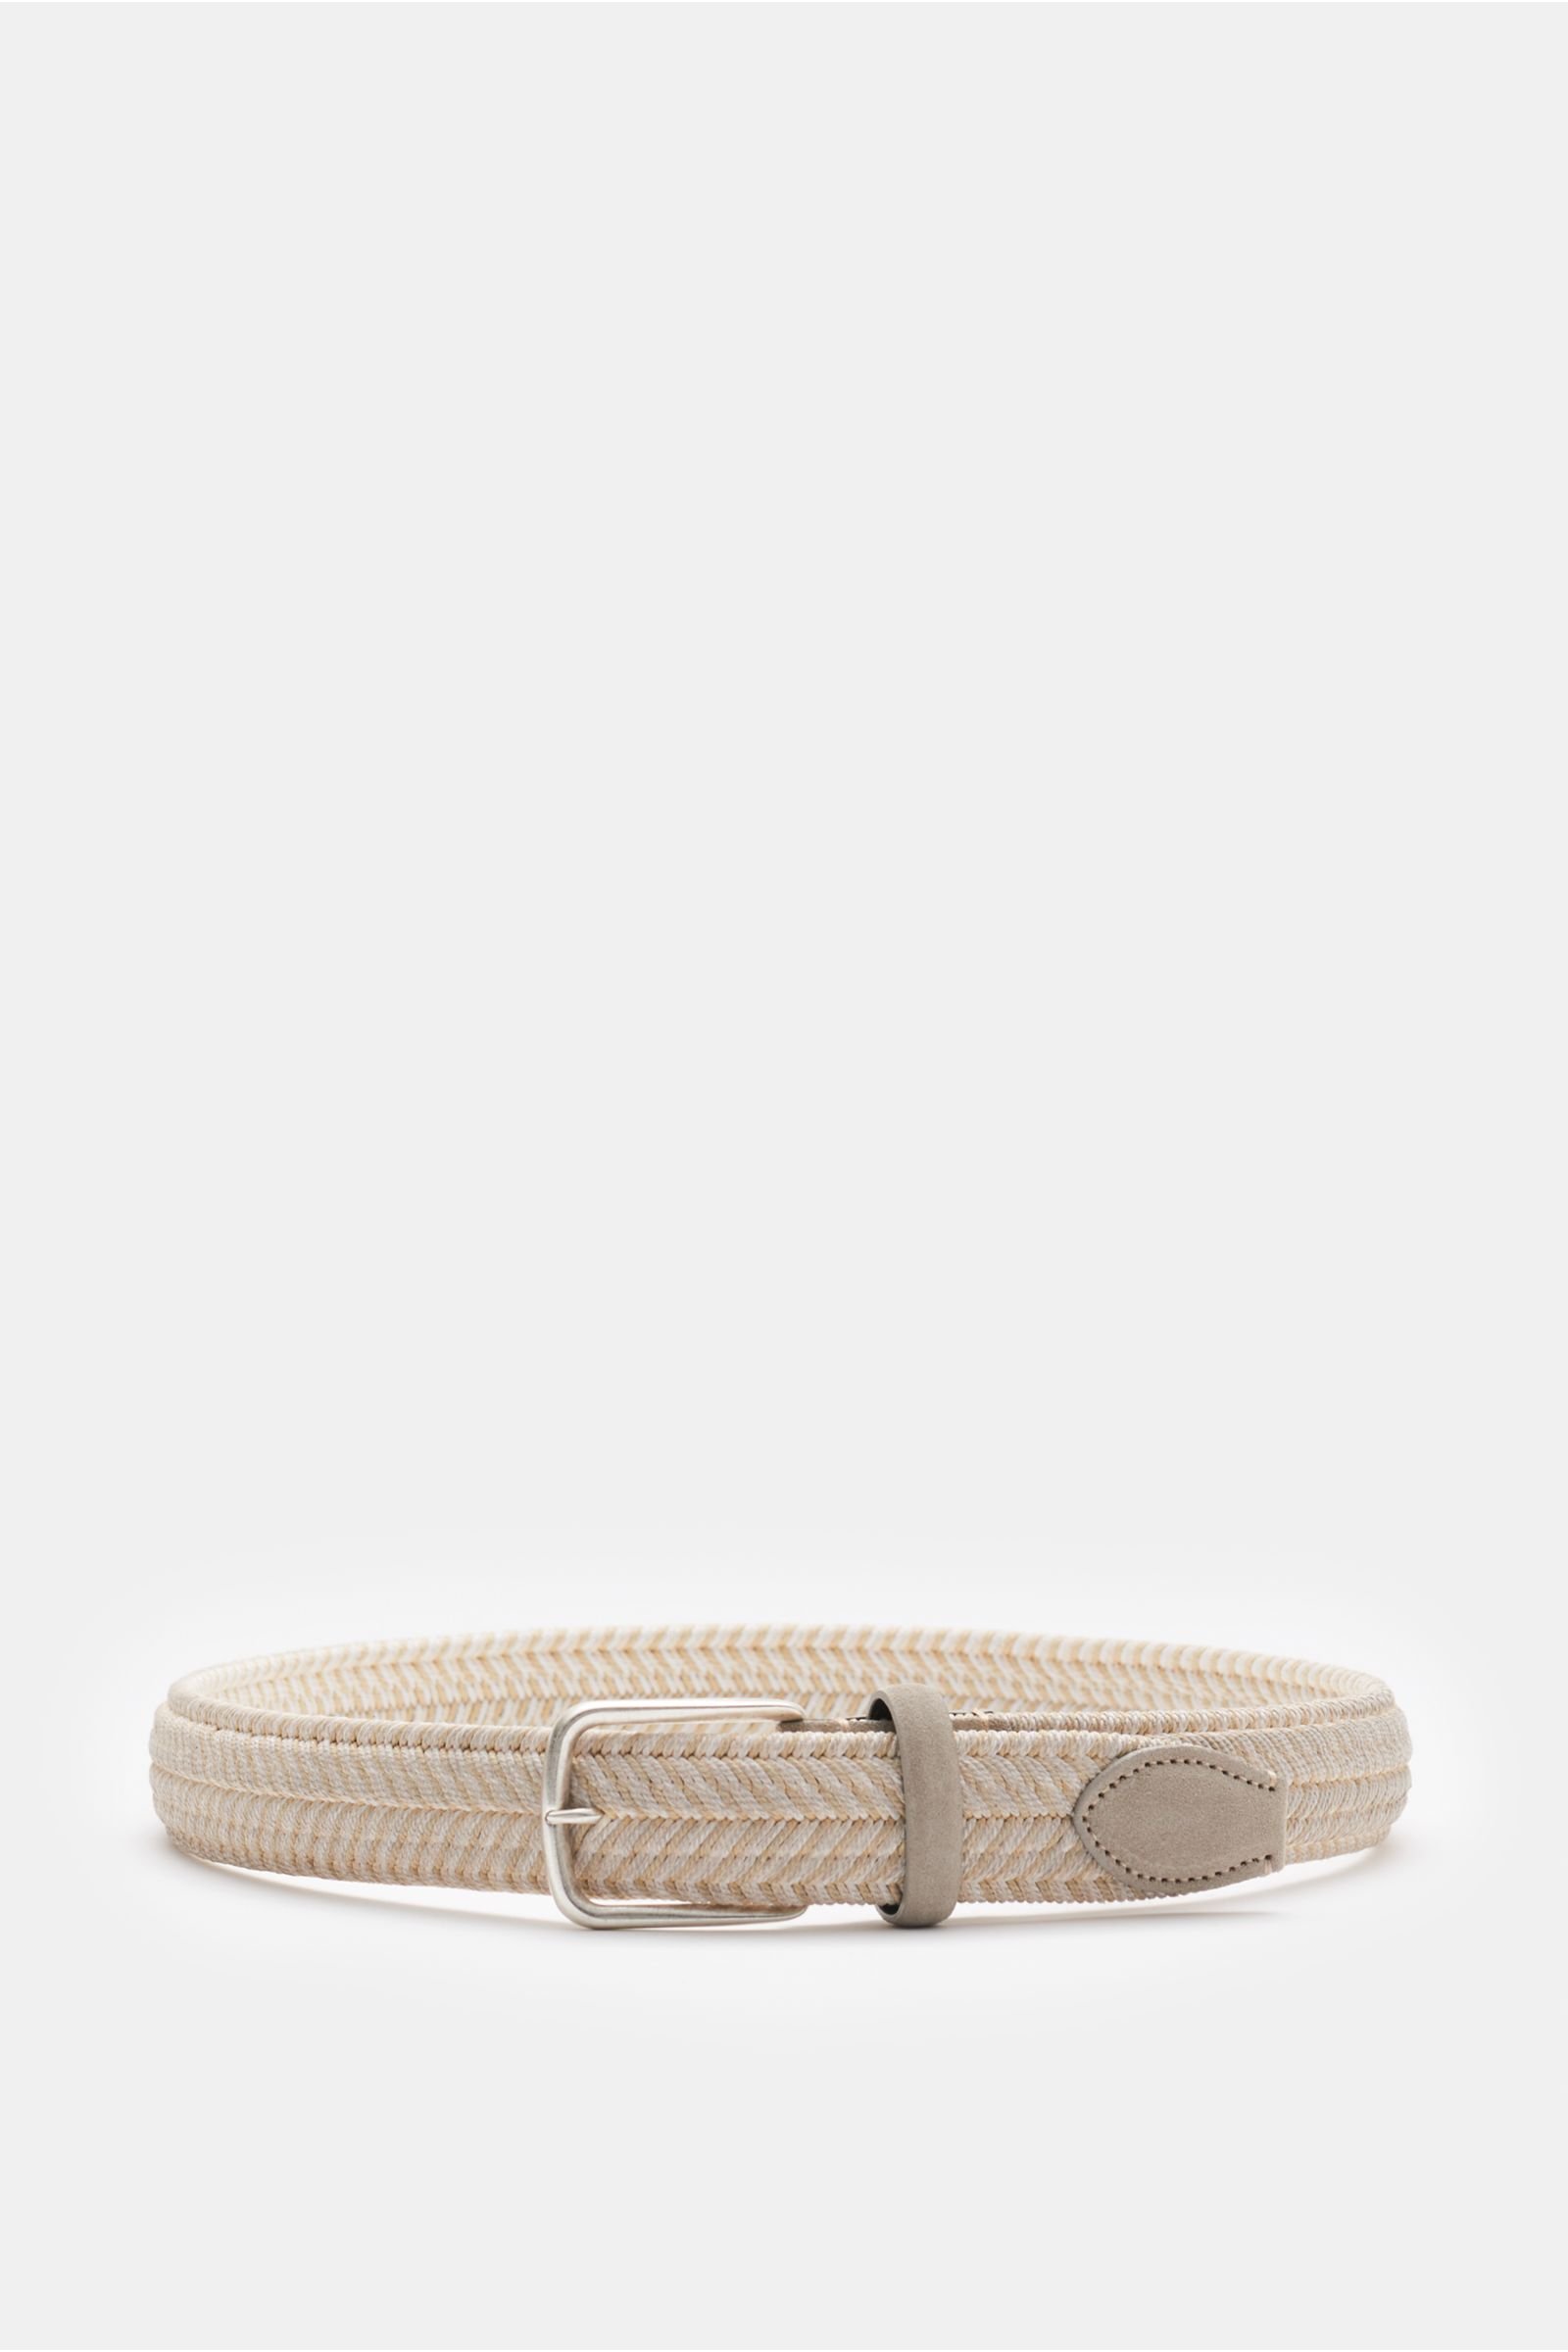 Plaited belt beige/off-white